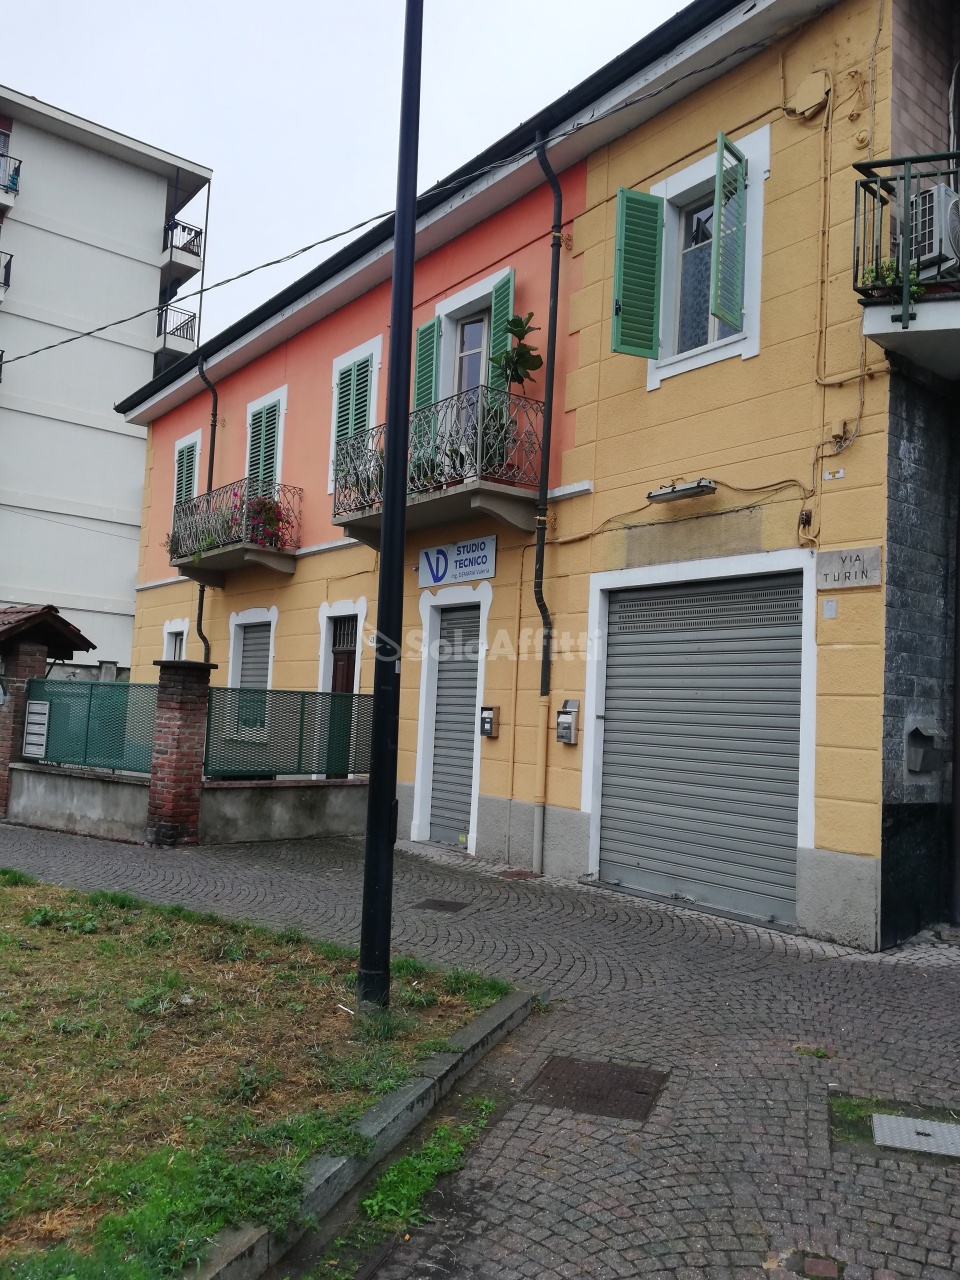 Negozio / Locale in affitto a Settimo Torinese, 2 locali, prezzo € 500 | CambioCasa.it